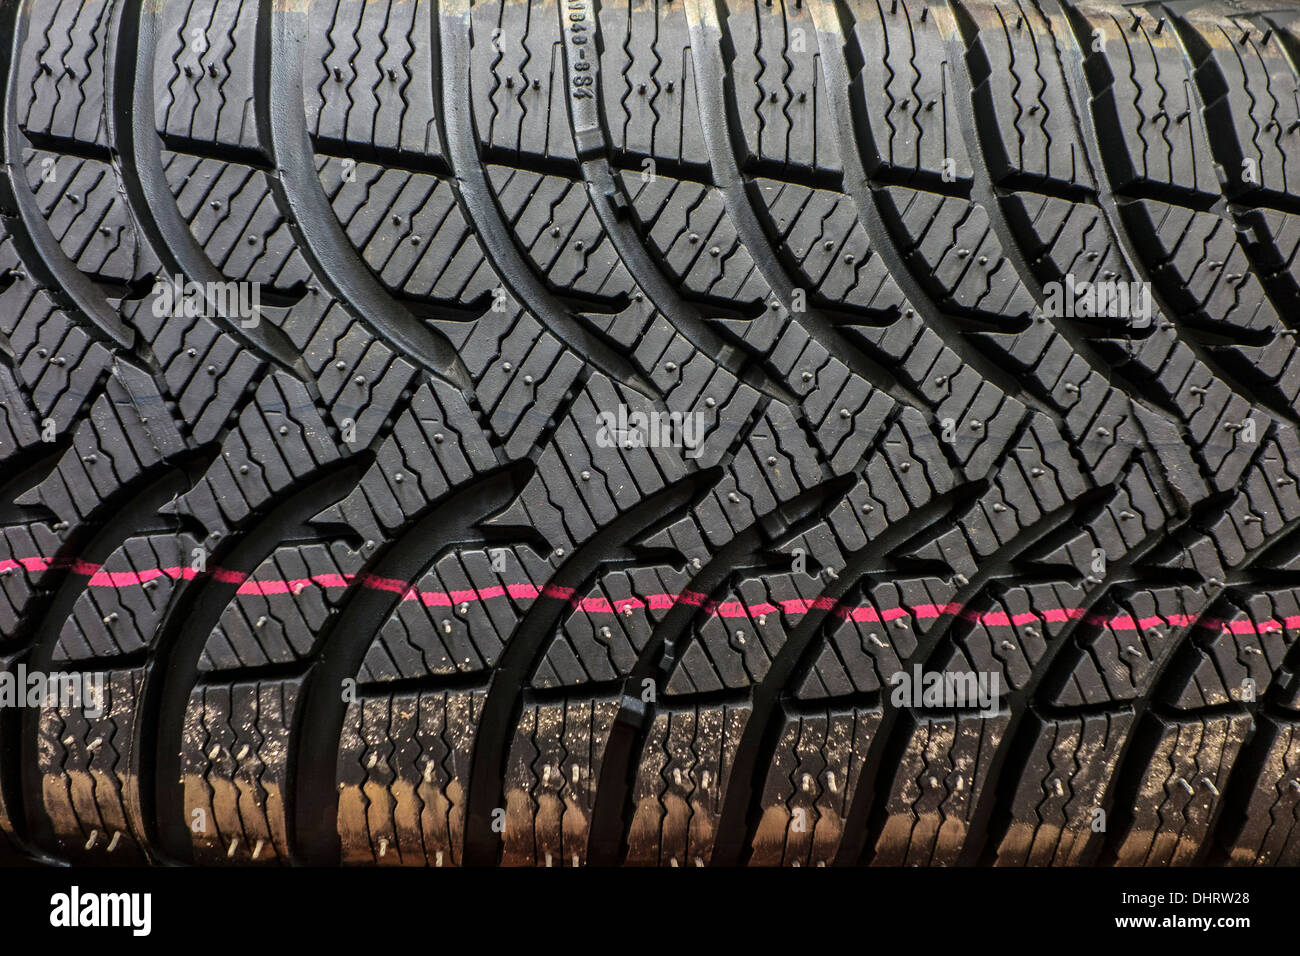 Close up de nouveau pneu hiver / pneu neige pour voiture montrant la bande de roulement en caoutchouc avec des rainures profondes et profil des lamelles supplémentaires Banque D'Images